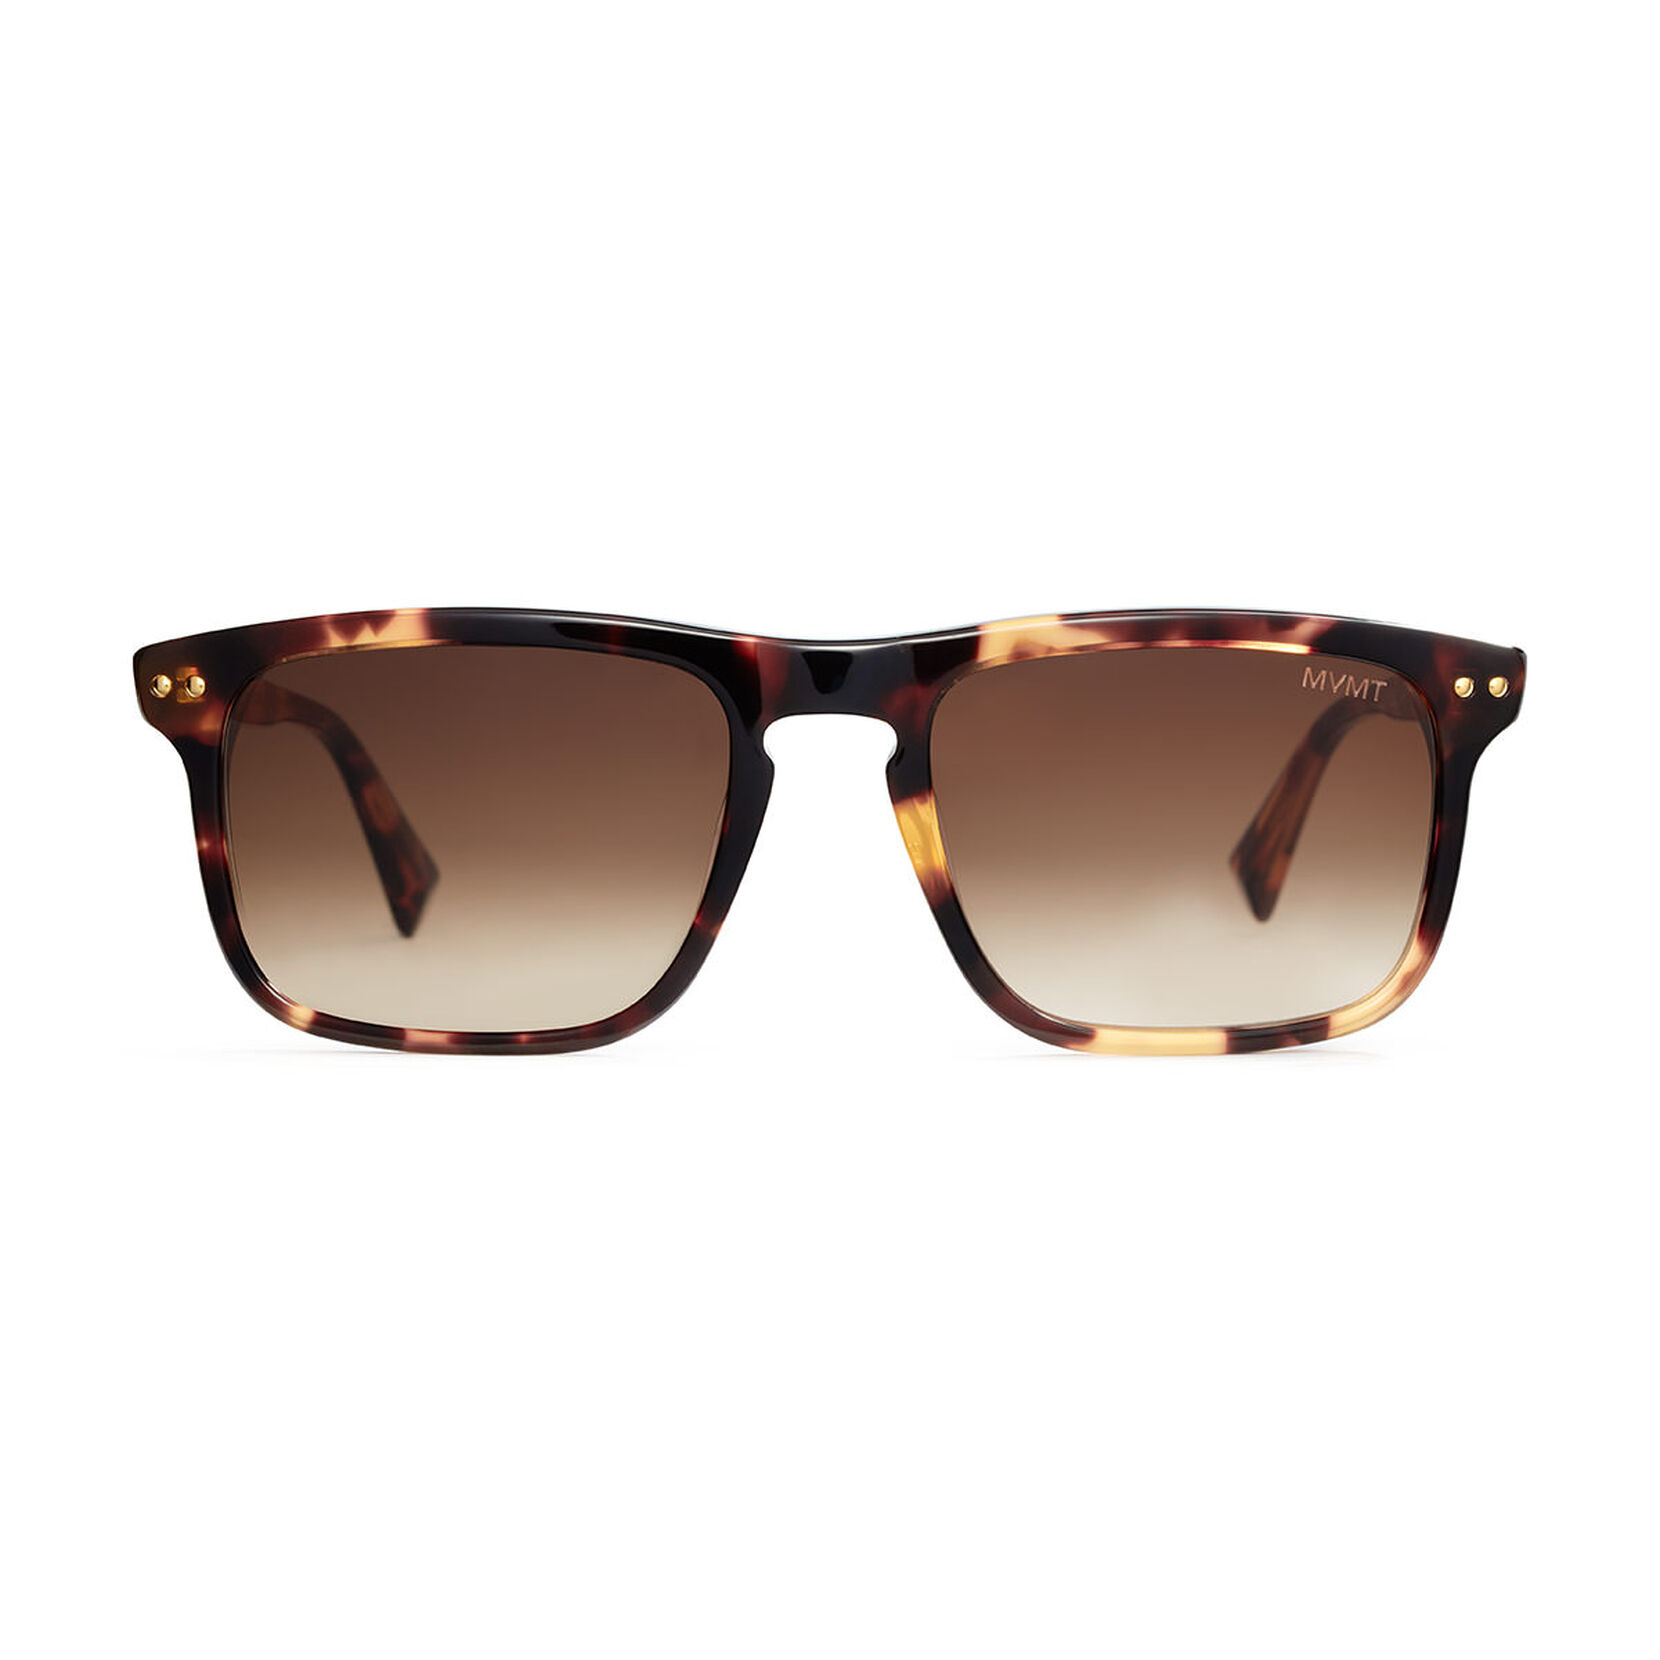 Reveler Slim Sunglasses | MVMT